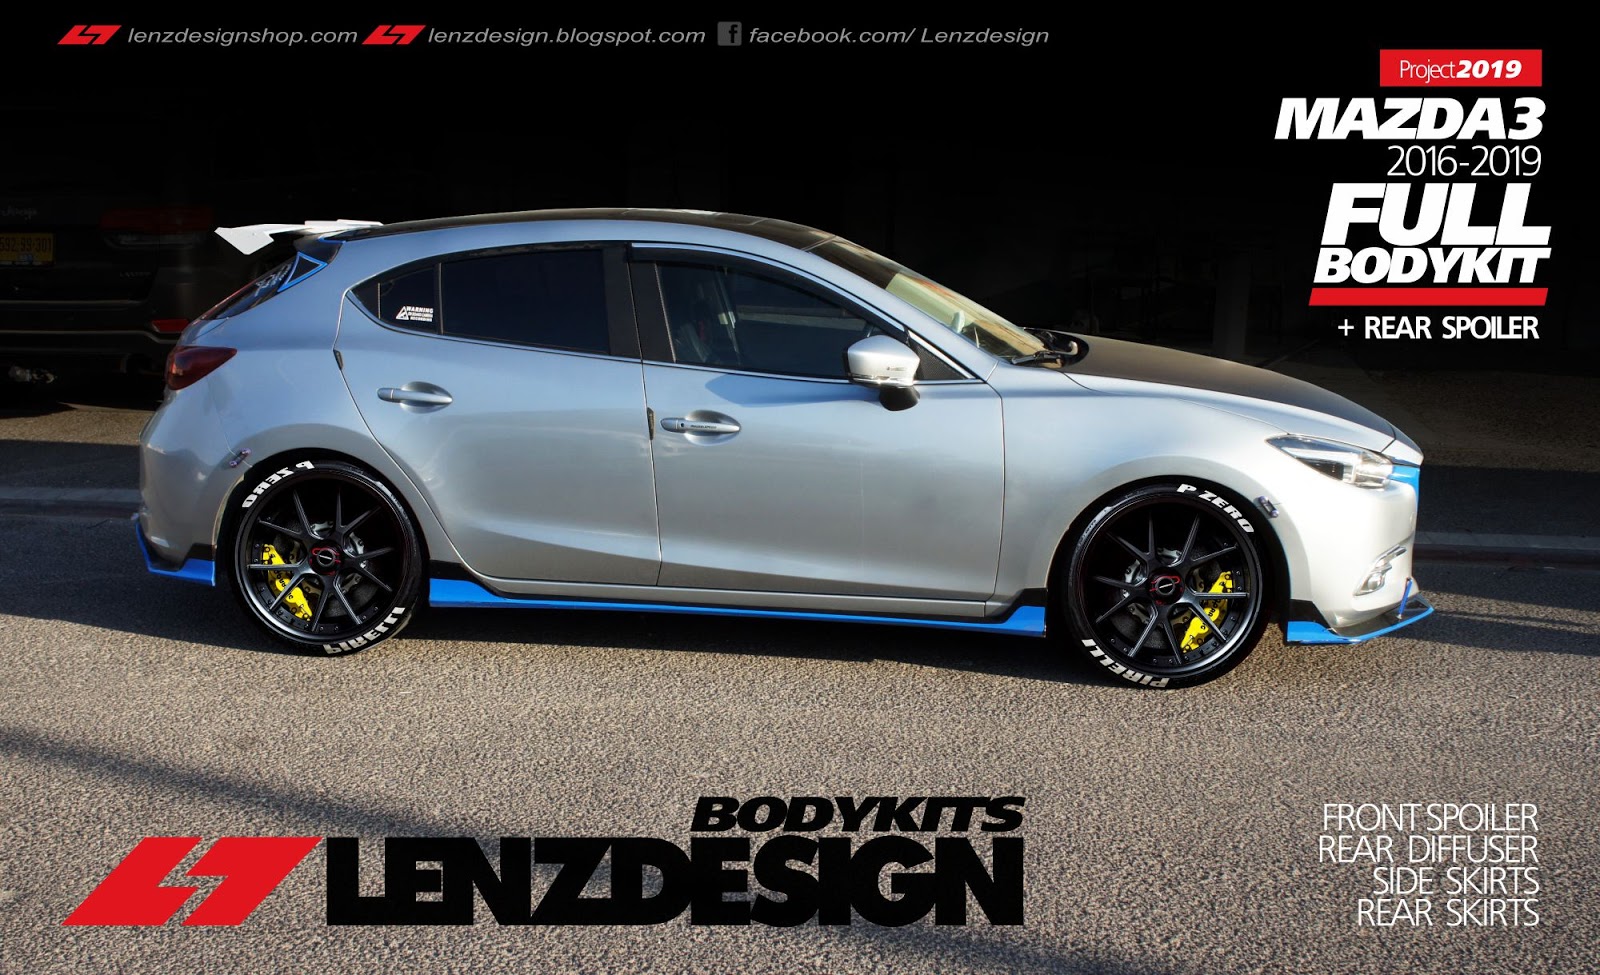 Mazda 3 BM Hatchback Lenzdesign Bodykit 2013-2019